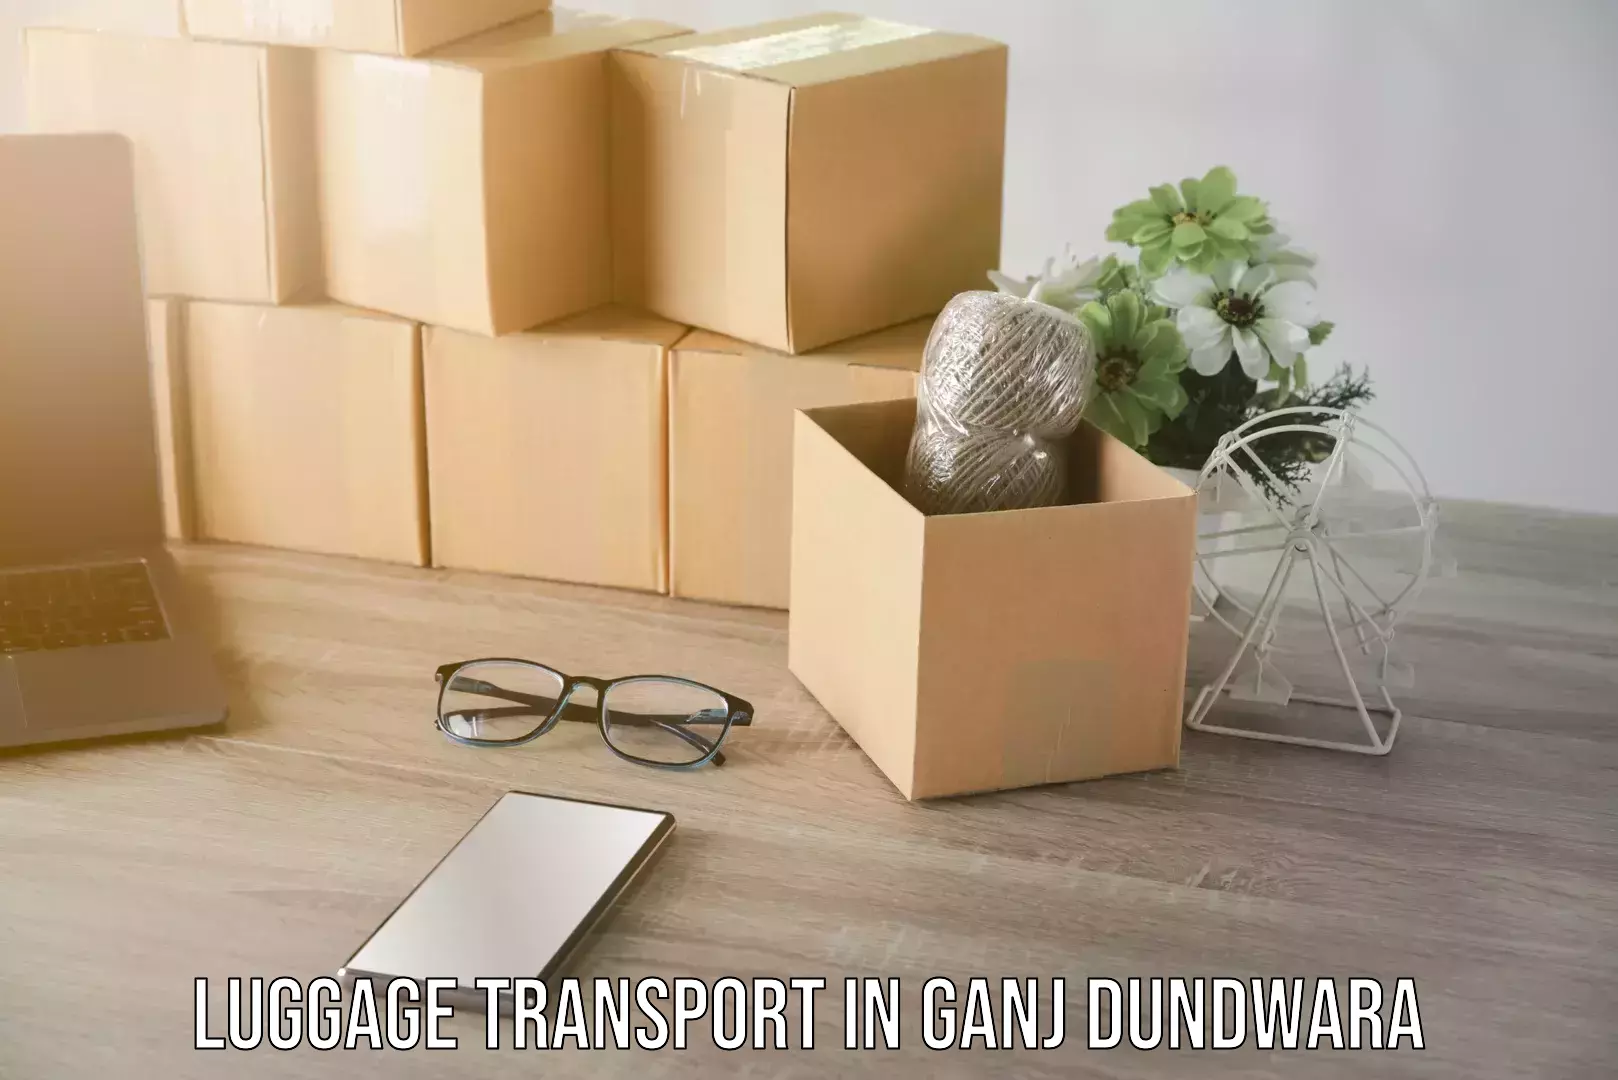 Same day baggage transport in Ganj Dundwara